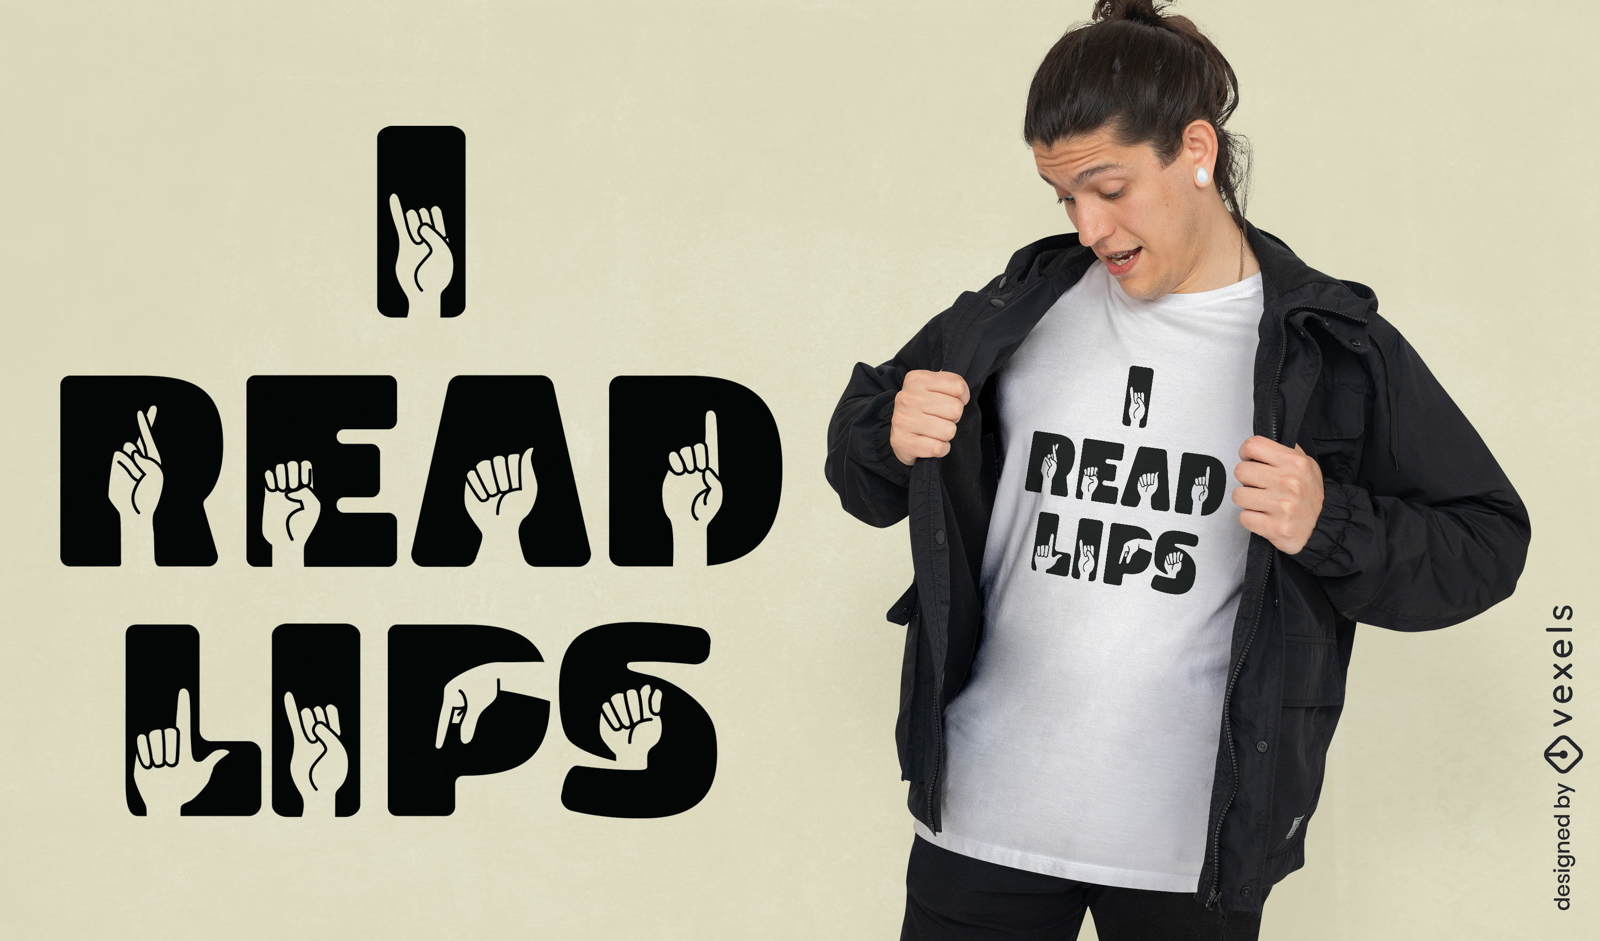 Diseño de camiseta con cita en lenguaje de señas